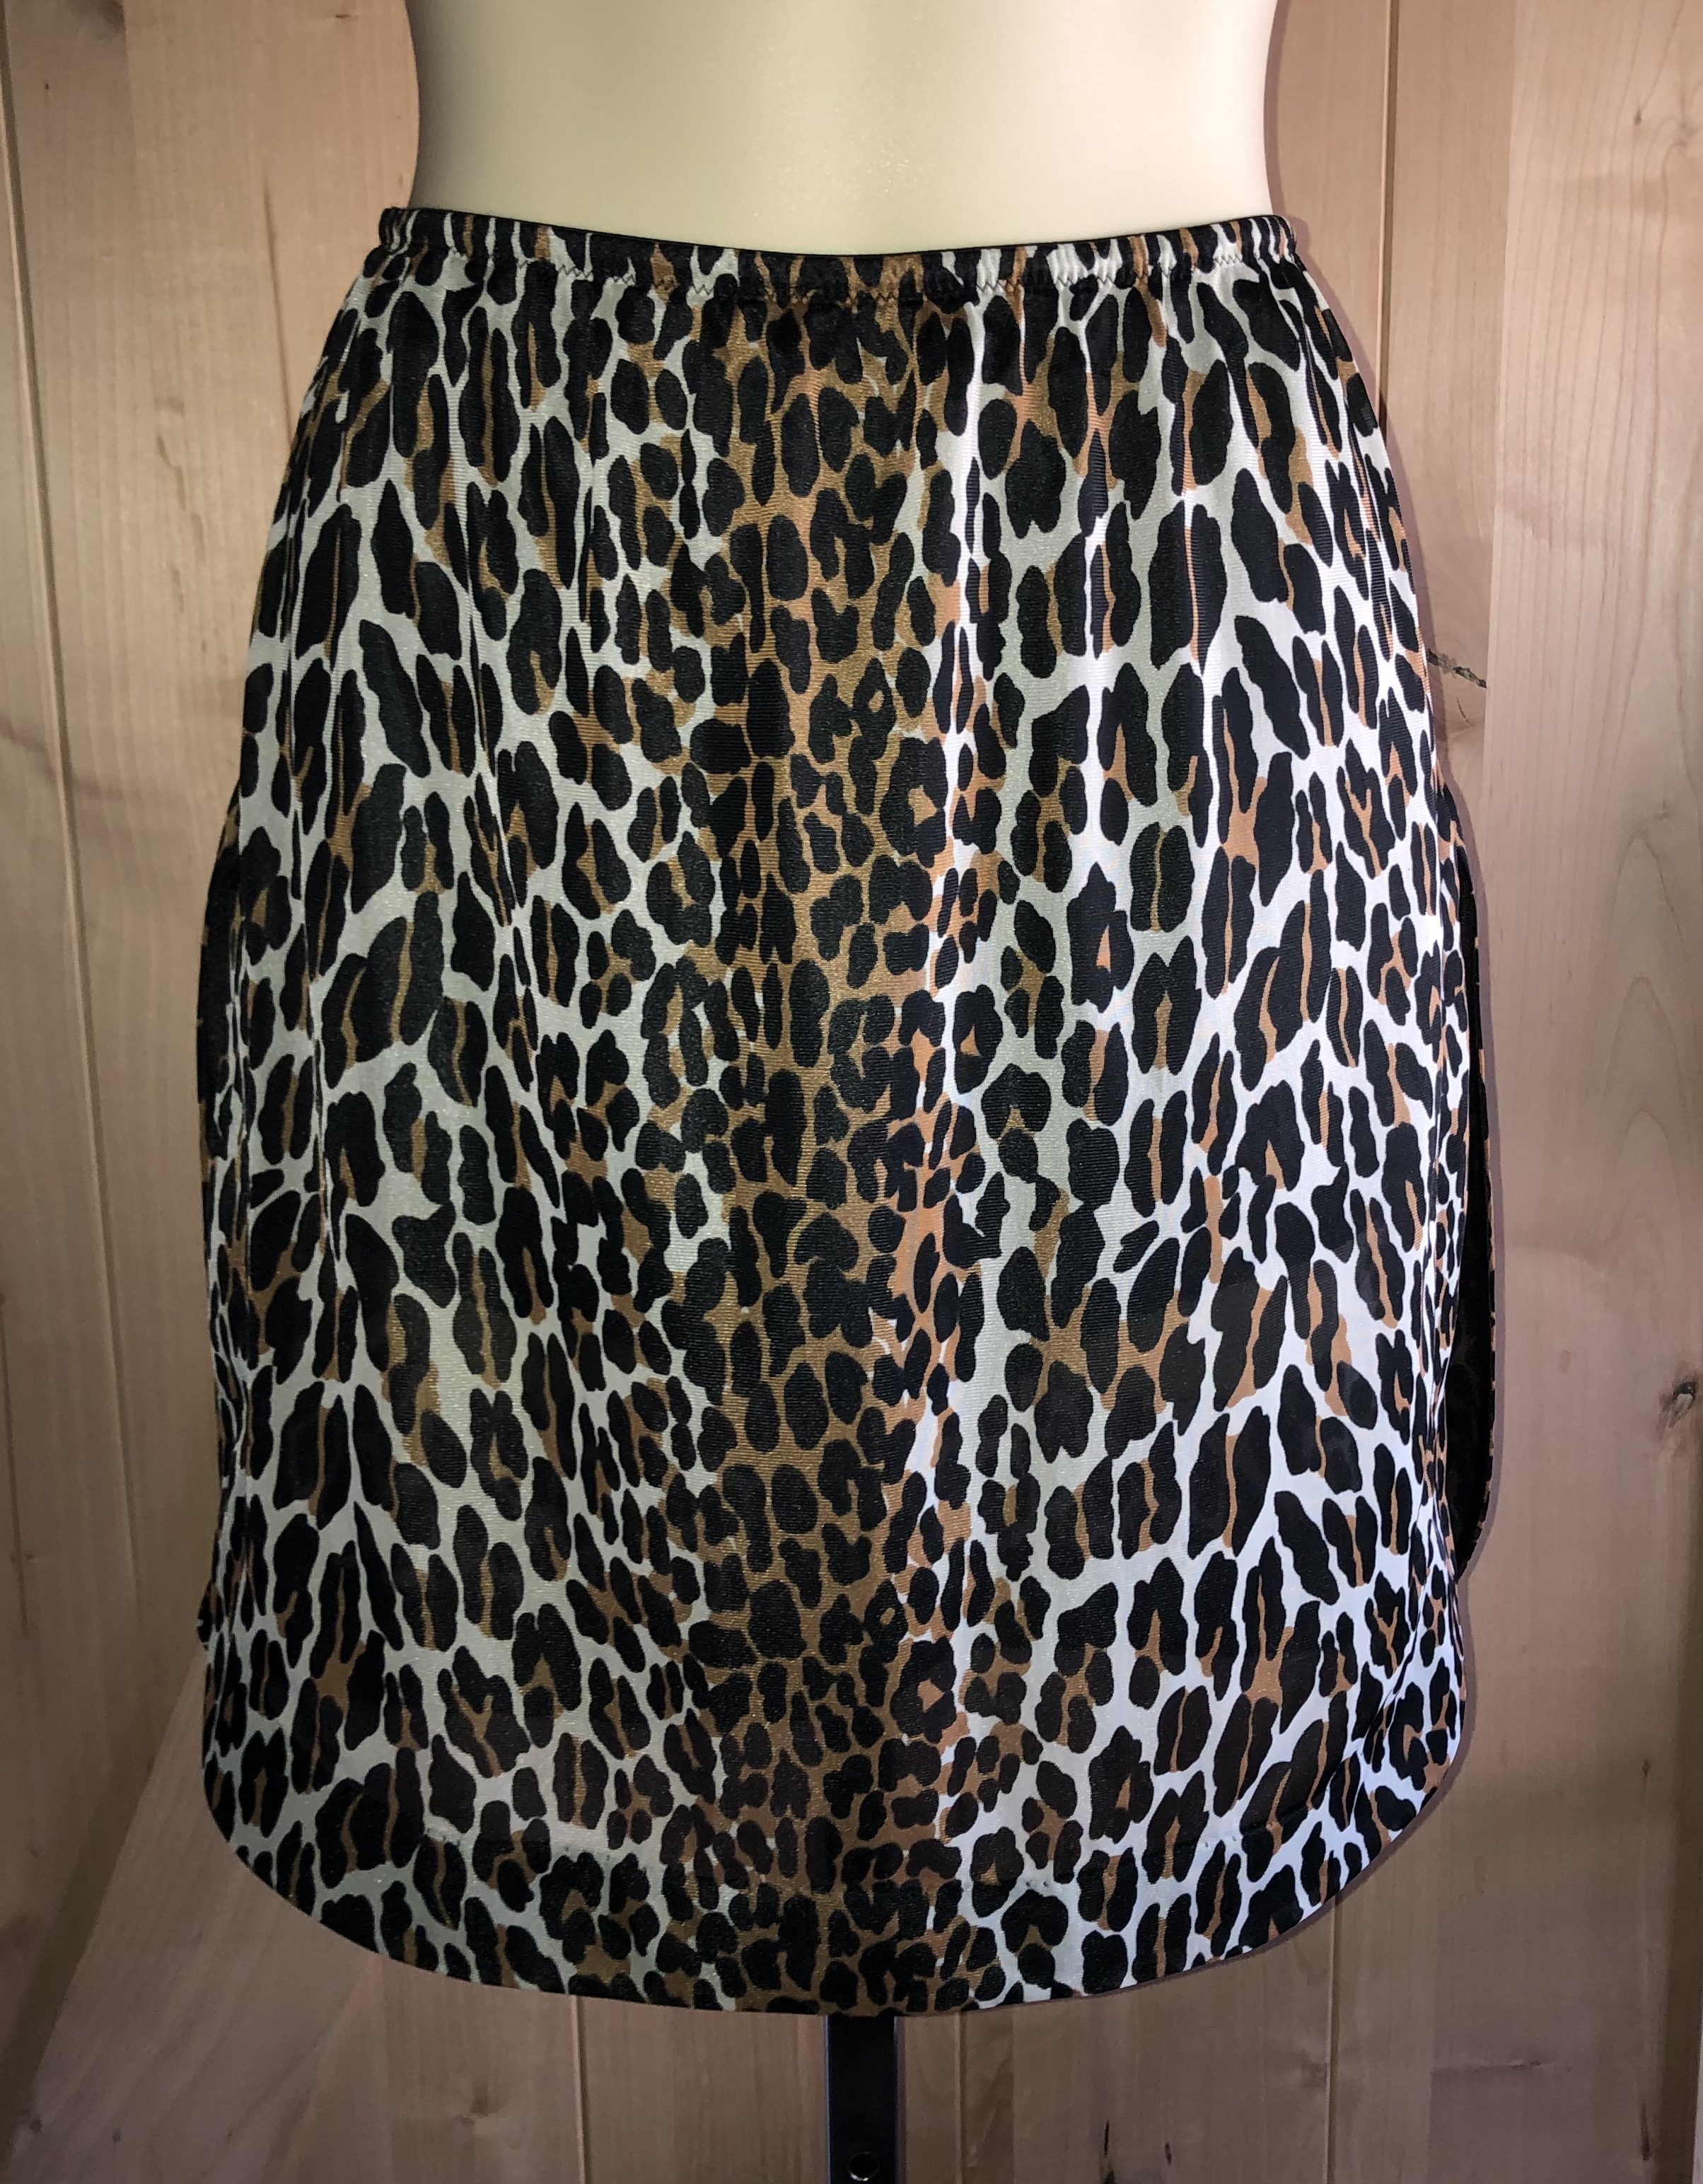 Vintage 1950's VANITY FAIR Wild Leopard Print Nylon Half Slip / Panties ...